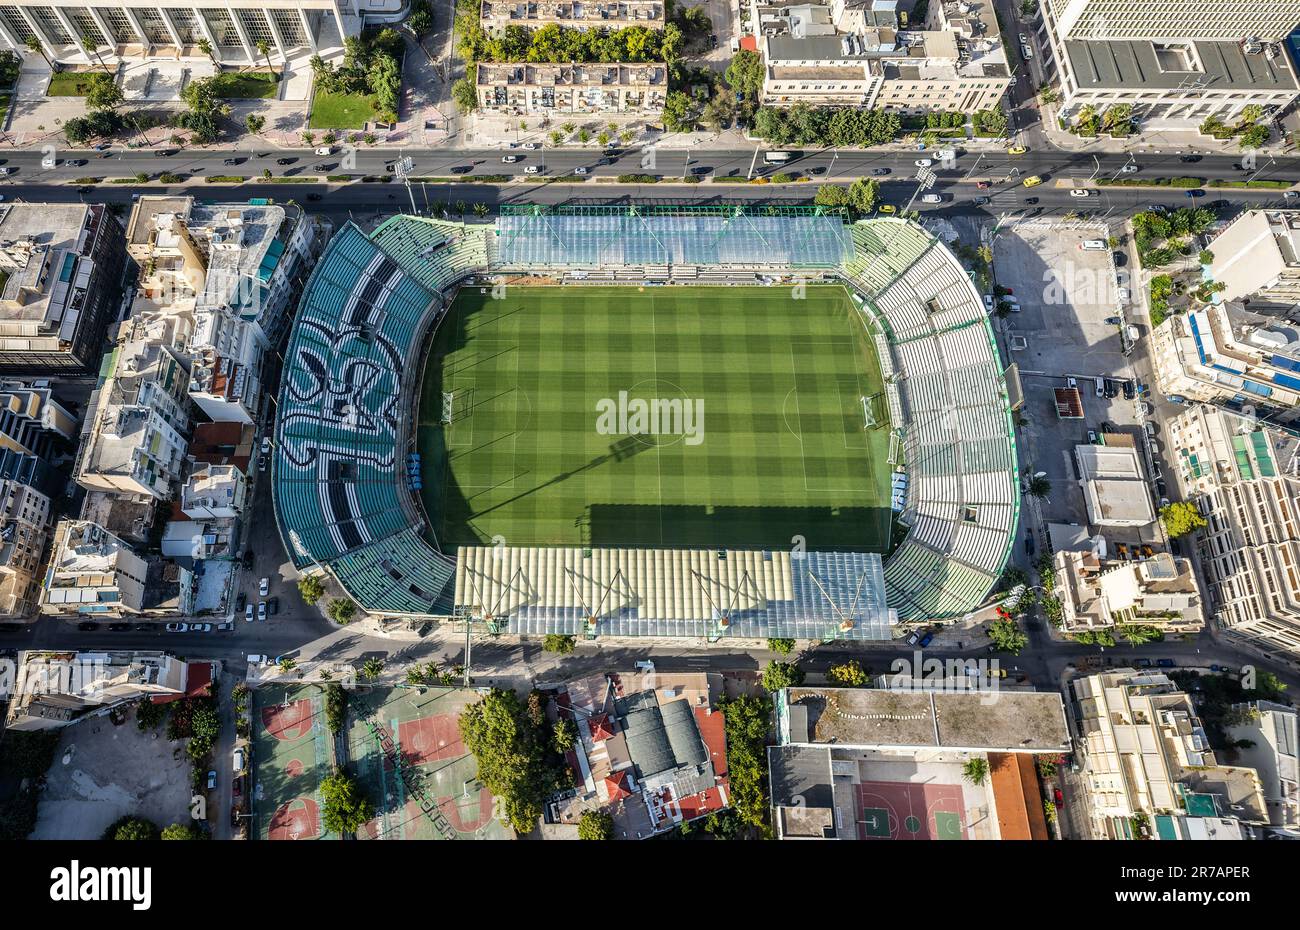 Une vue aérienne du stade Apostolos Nikolaidis, situé dans la ville d'Athènes, Grèce Banque D'Images